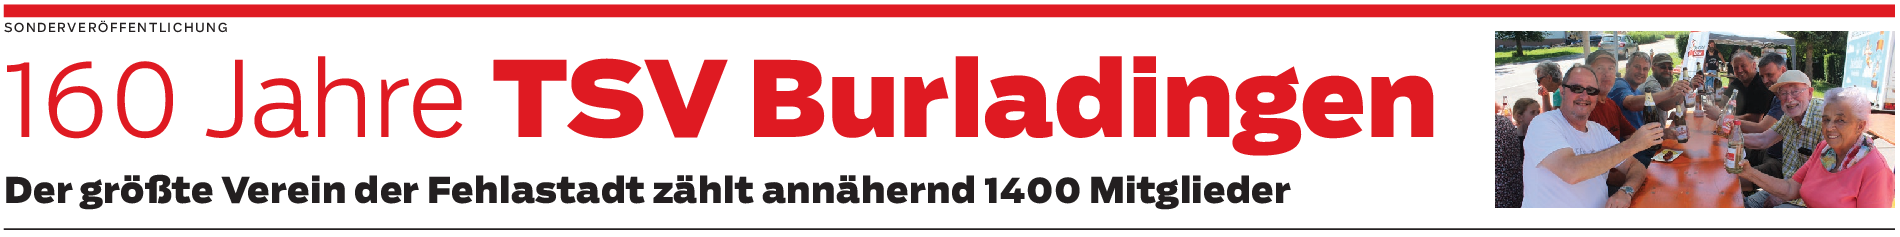 160 Jahre TSV Burladingen: Jubiläumsjahr nähert sich einem weiteren Höhepunkt